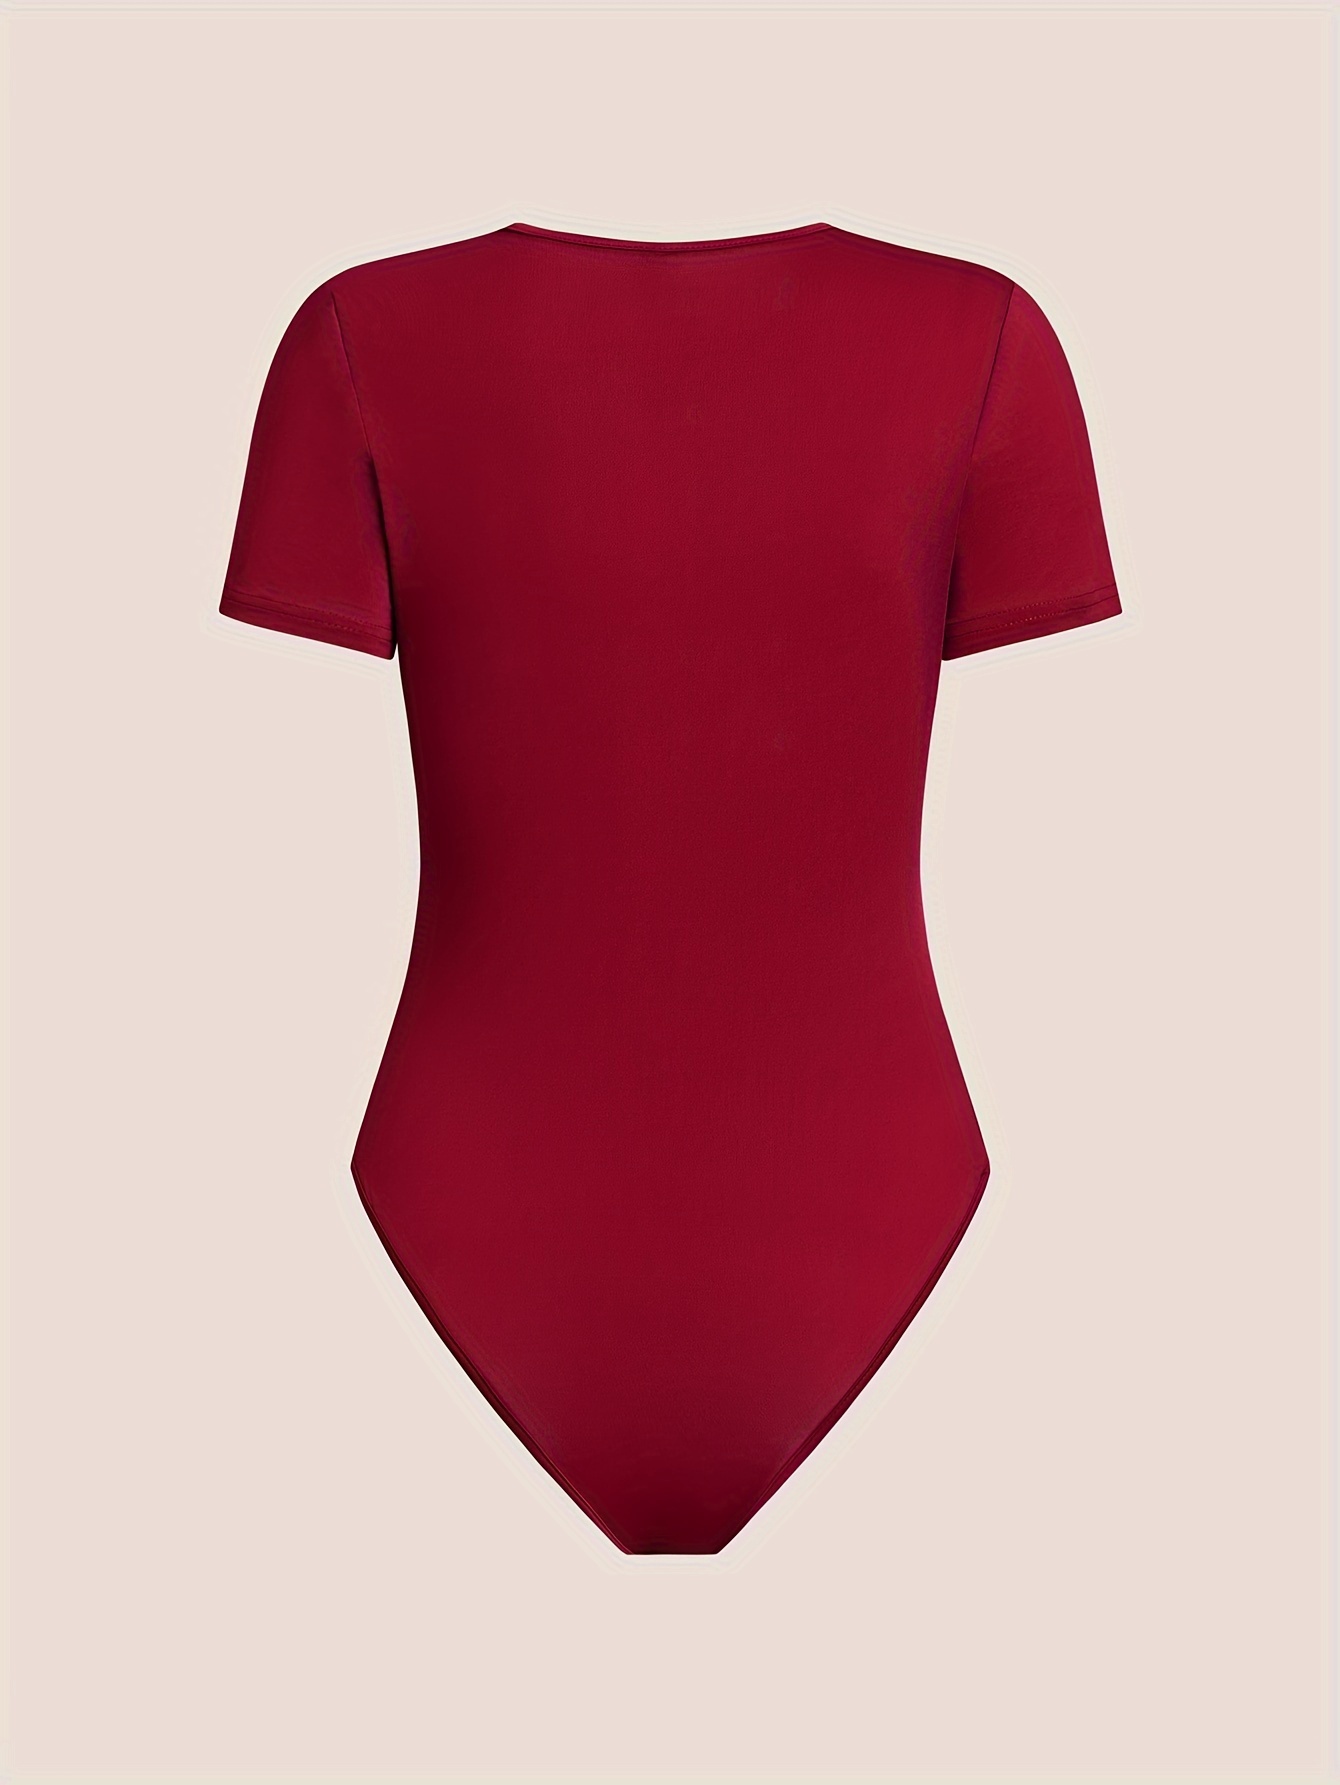 ASEIDFNSA Red Shorts for Women Womens Bodysuit Short Sleeve Denim